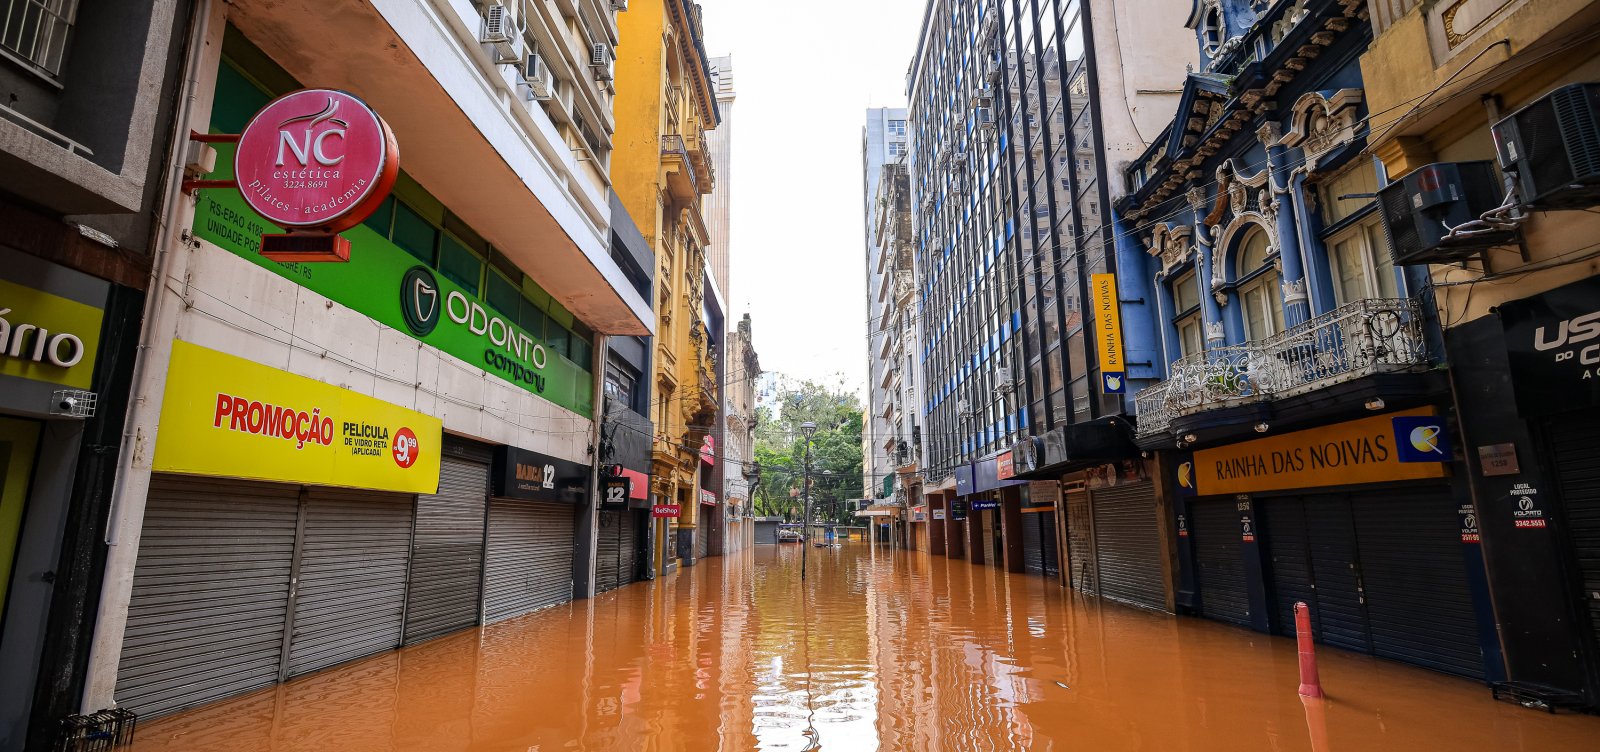 Parte do RS entra em alerta para riscos de novas inundações devido às fortes chuvas